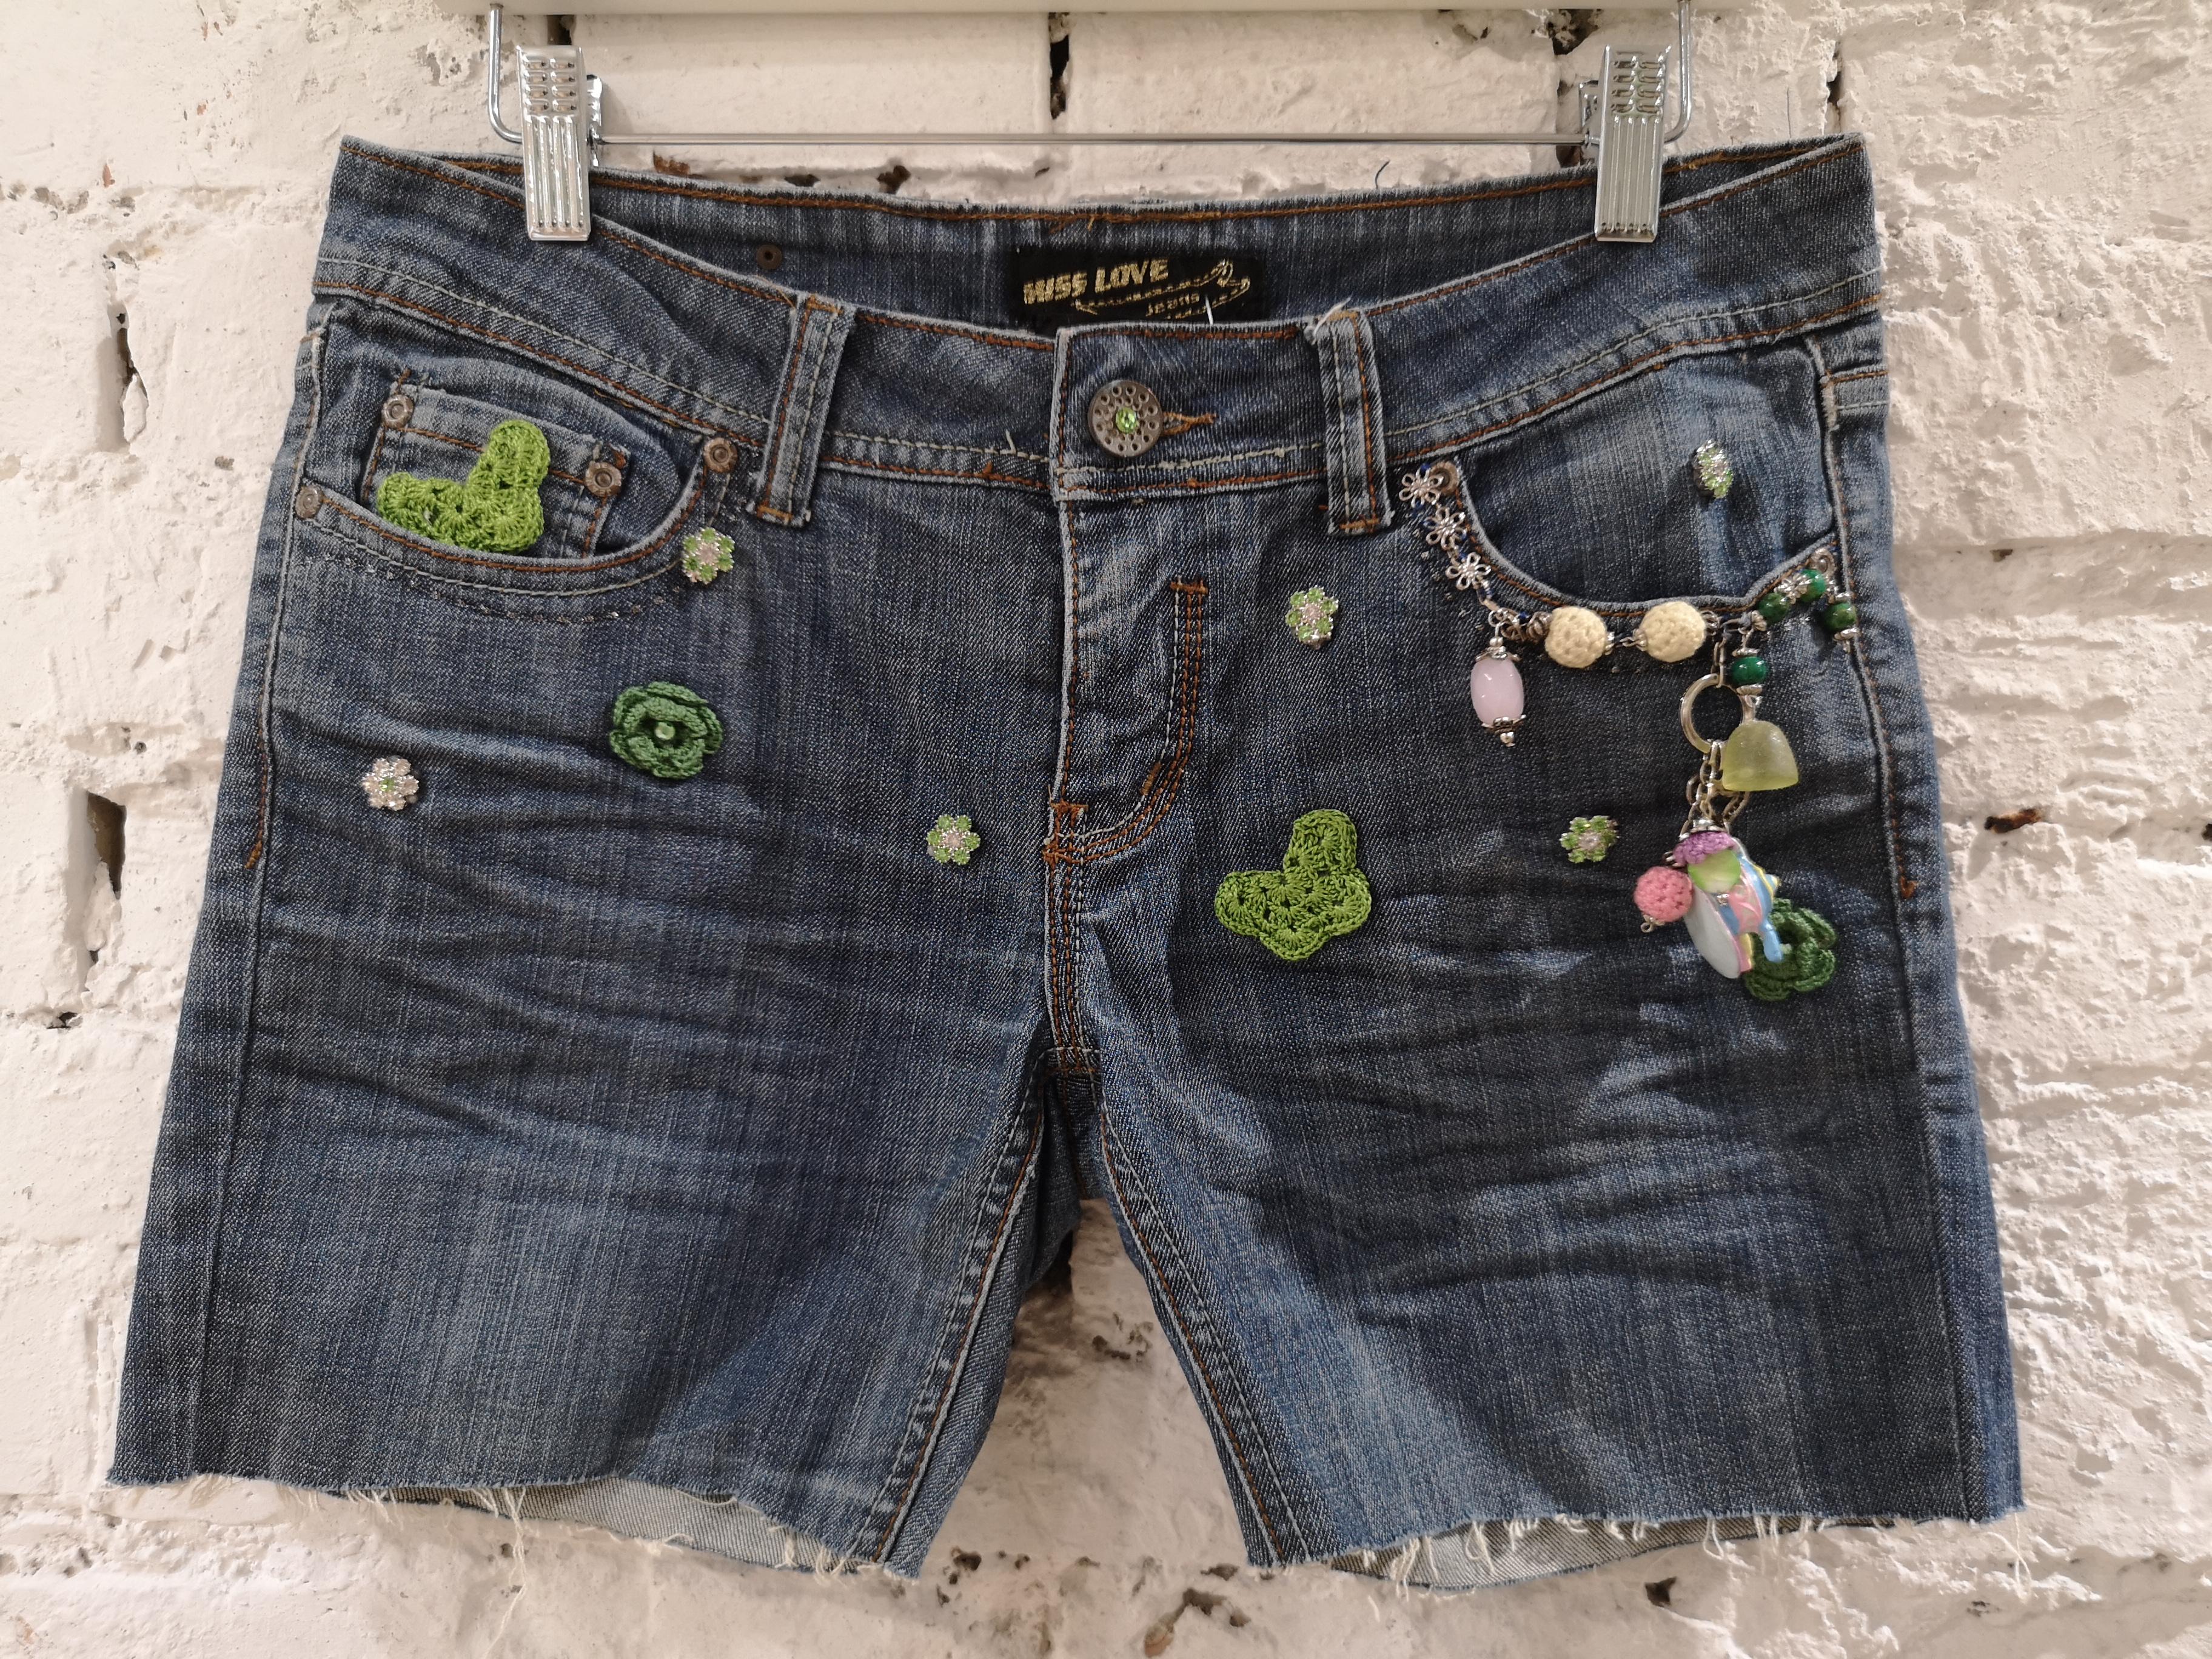 SOAB Blue cotton handmade denim shorts
measurements:
total lenght 30 cm
waist 80 cm